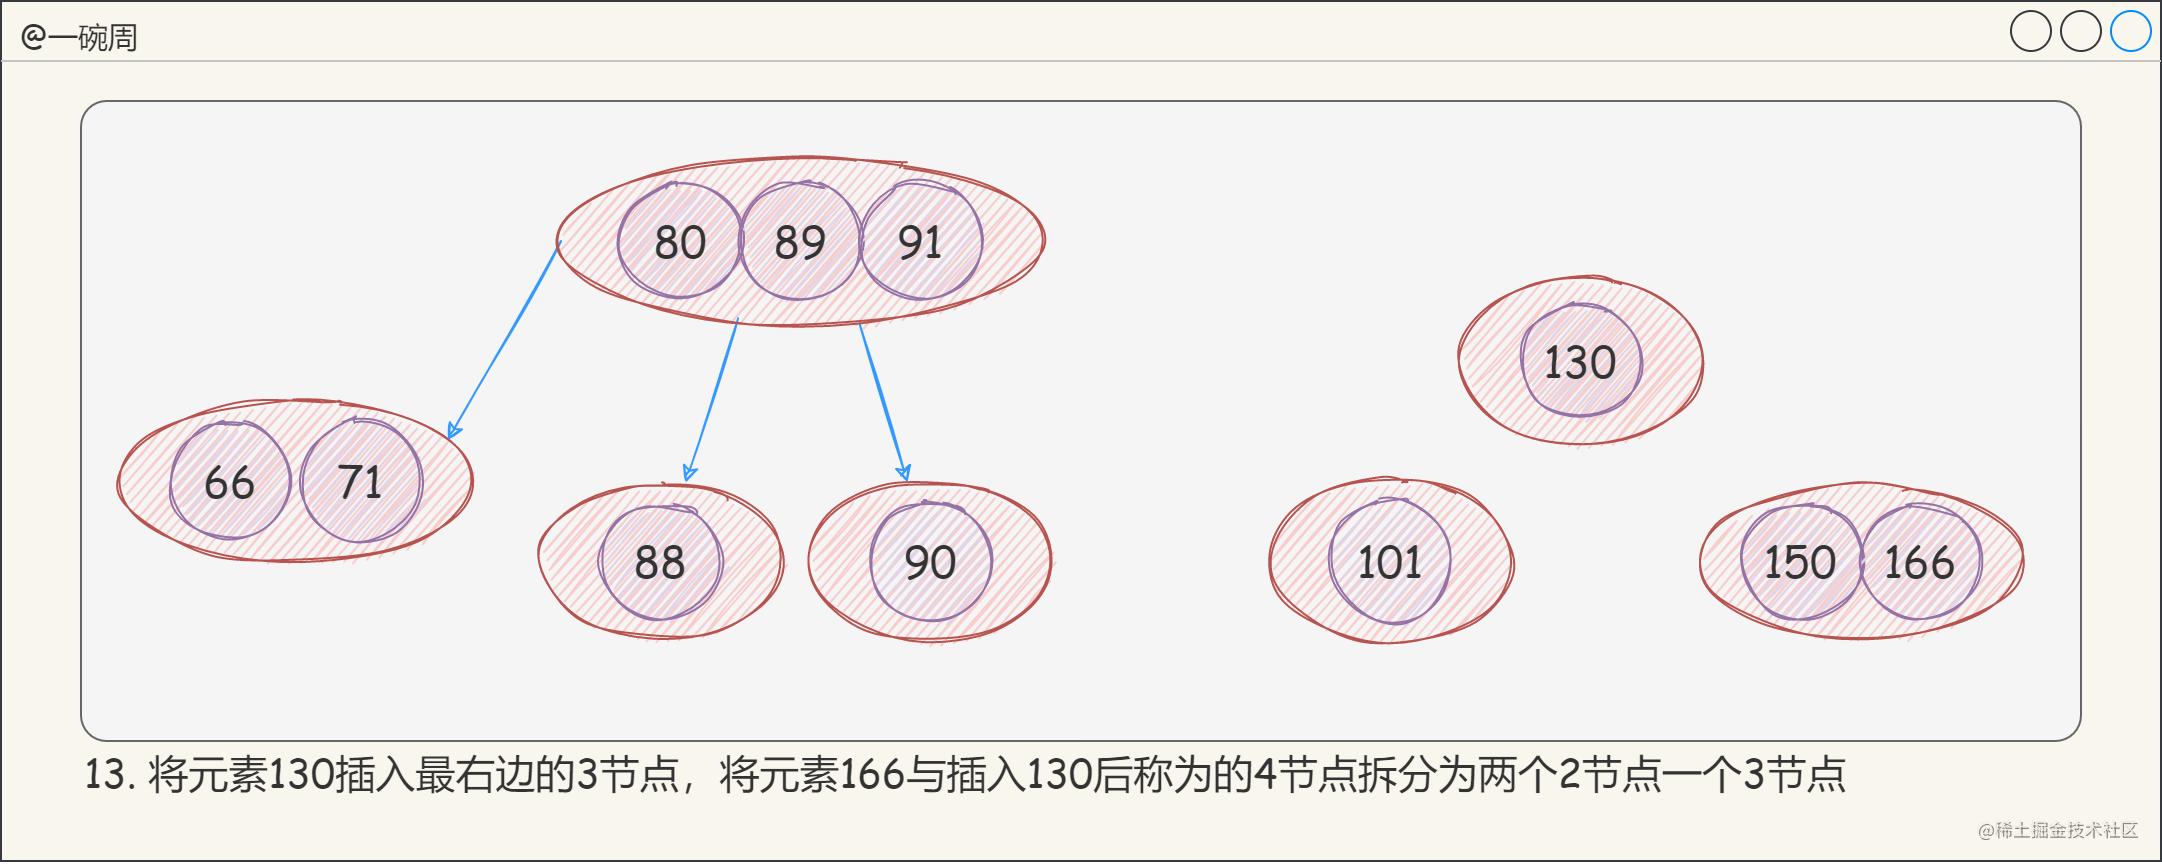 13_2-3-4树的构建过程9_LM9eUf3FHO.png